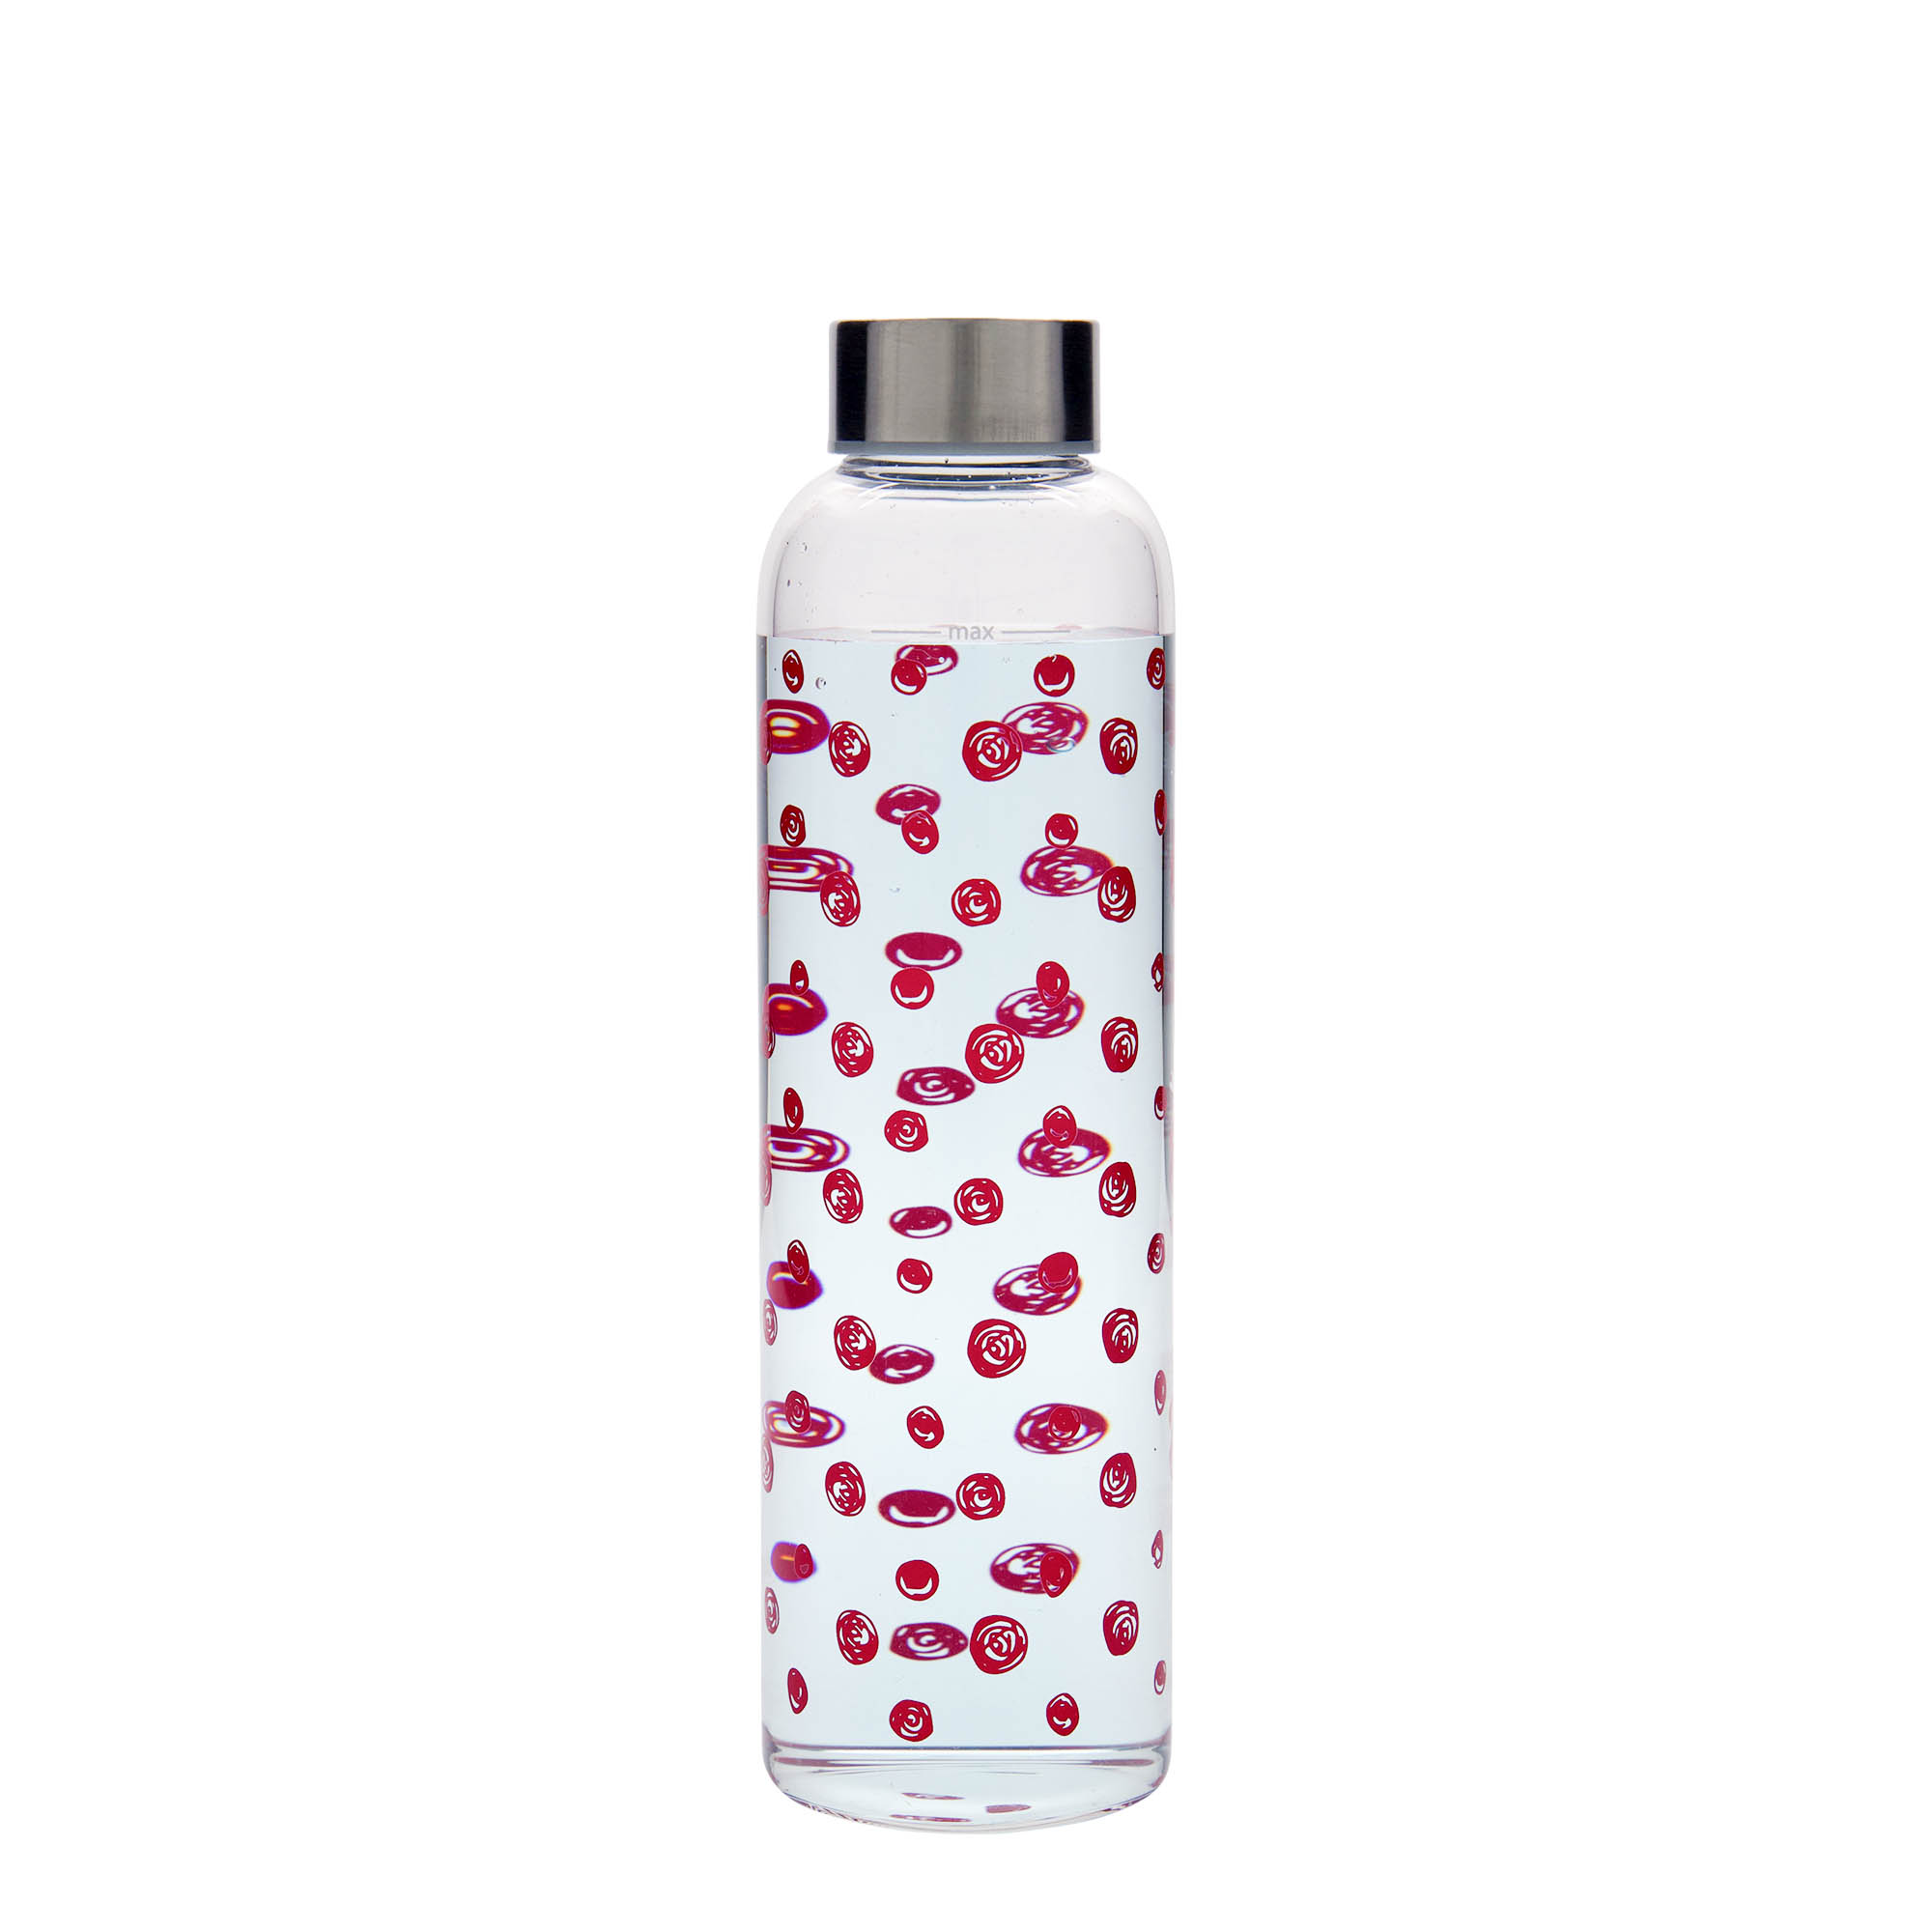 500 ml-es ivópalack, 'Perseus', motívum: Piros pontok, szájnyílás: csavaros kupak